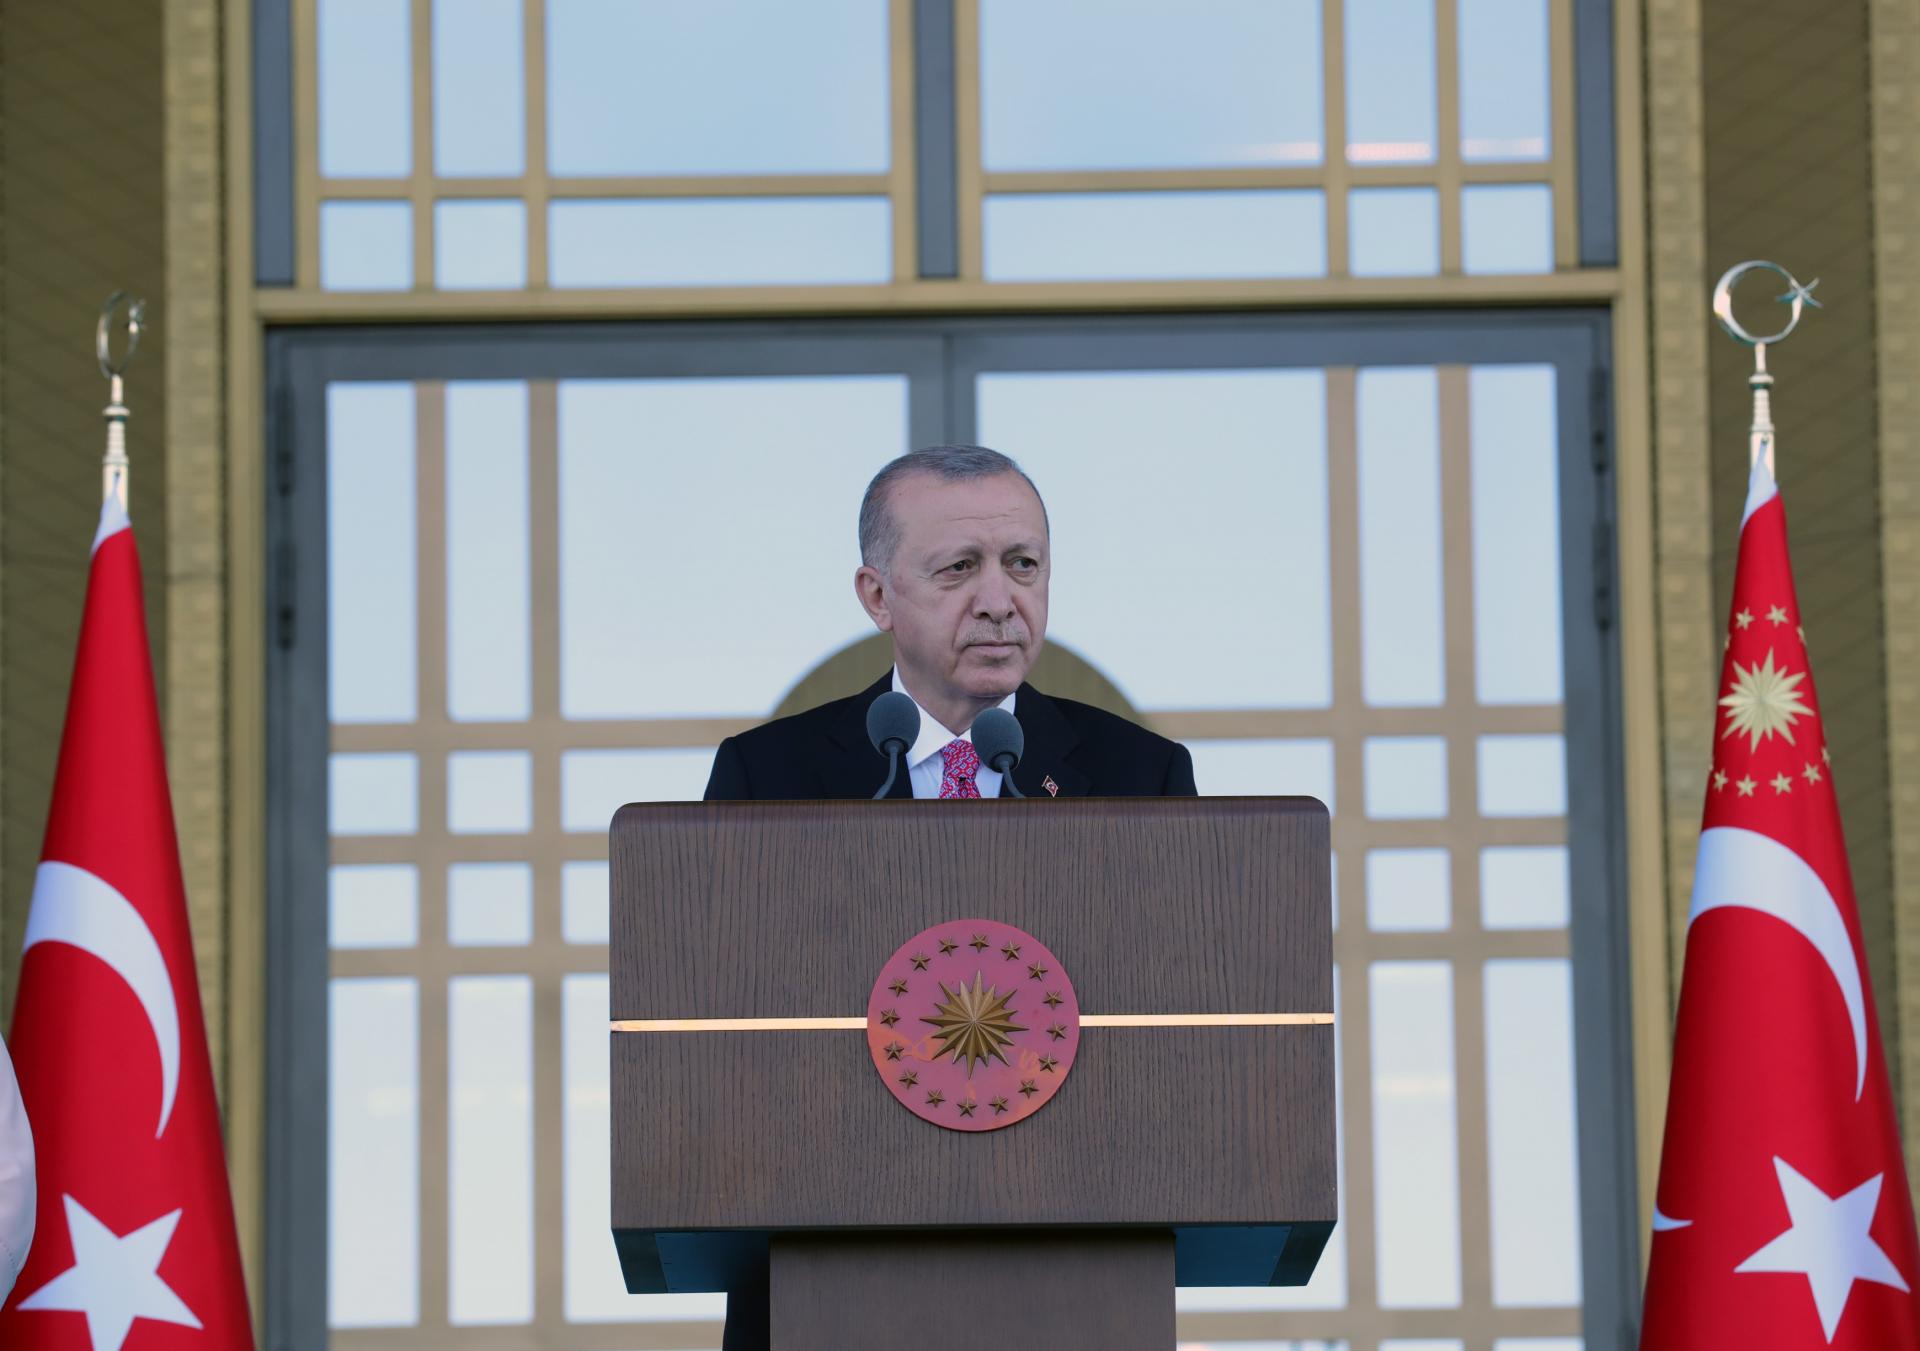 سخنان رئیس جمهور اردوغان در مورد کمک های ترکیه به اندونزیا